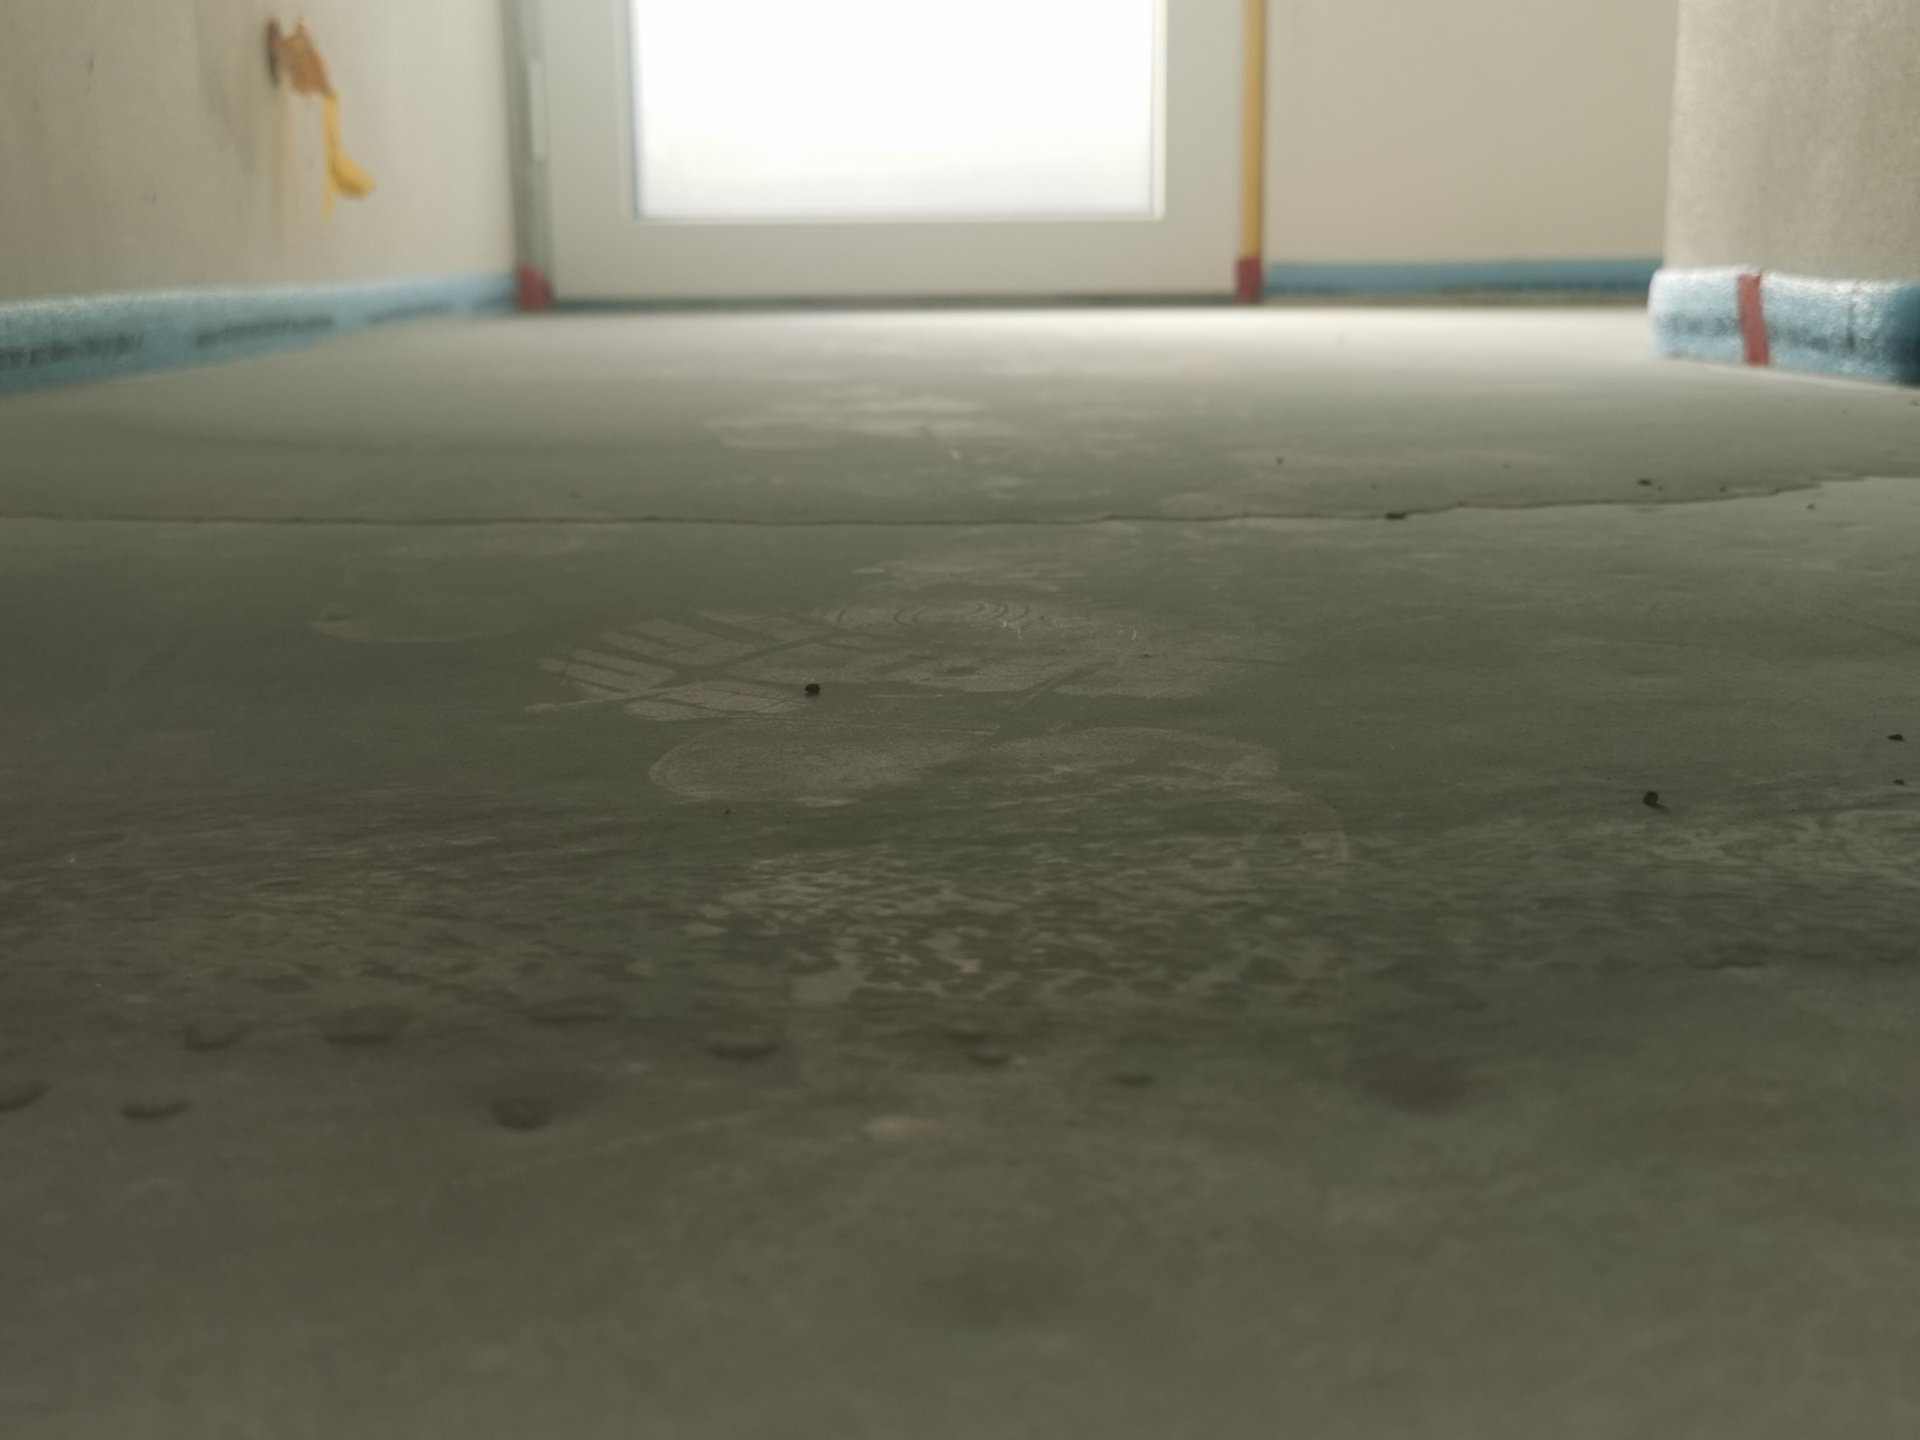 Estrich auf Minitec Fußbodenheizung mit Löchern und uneben